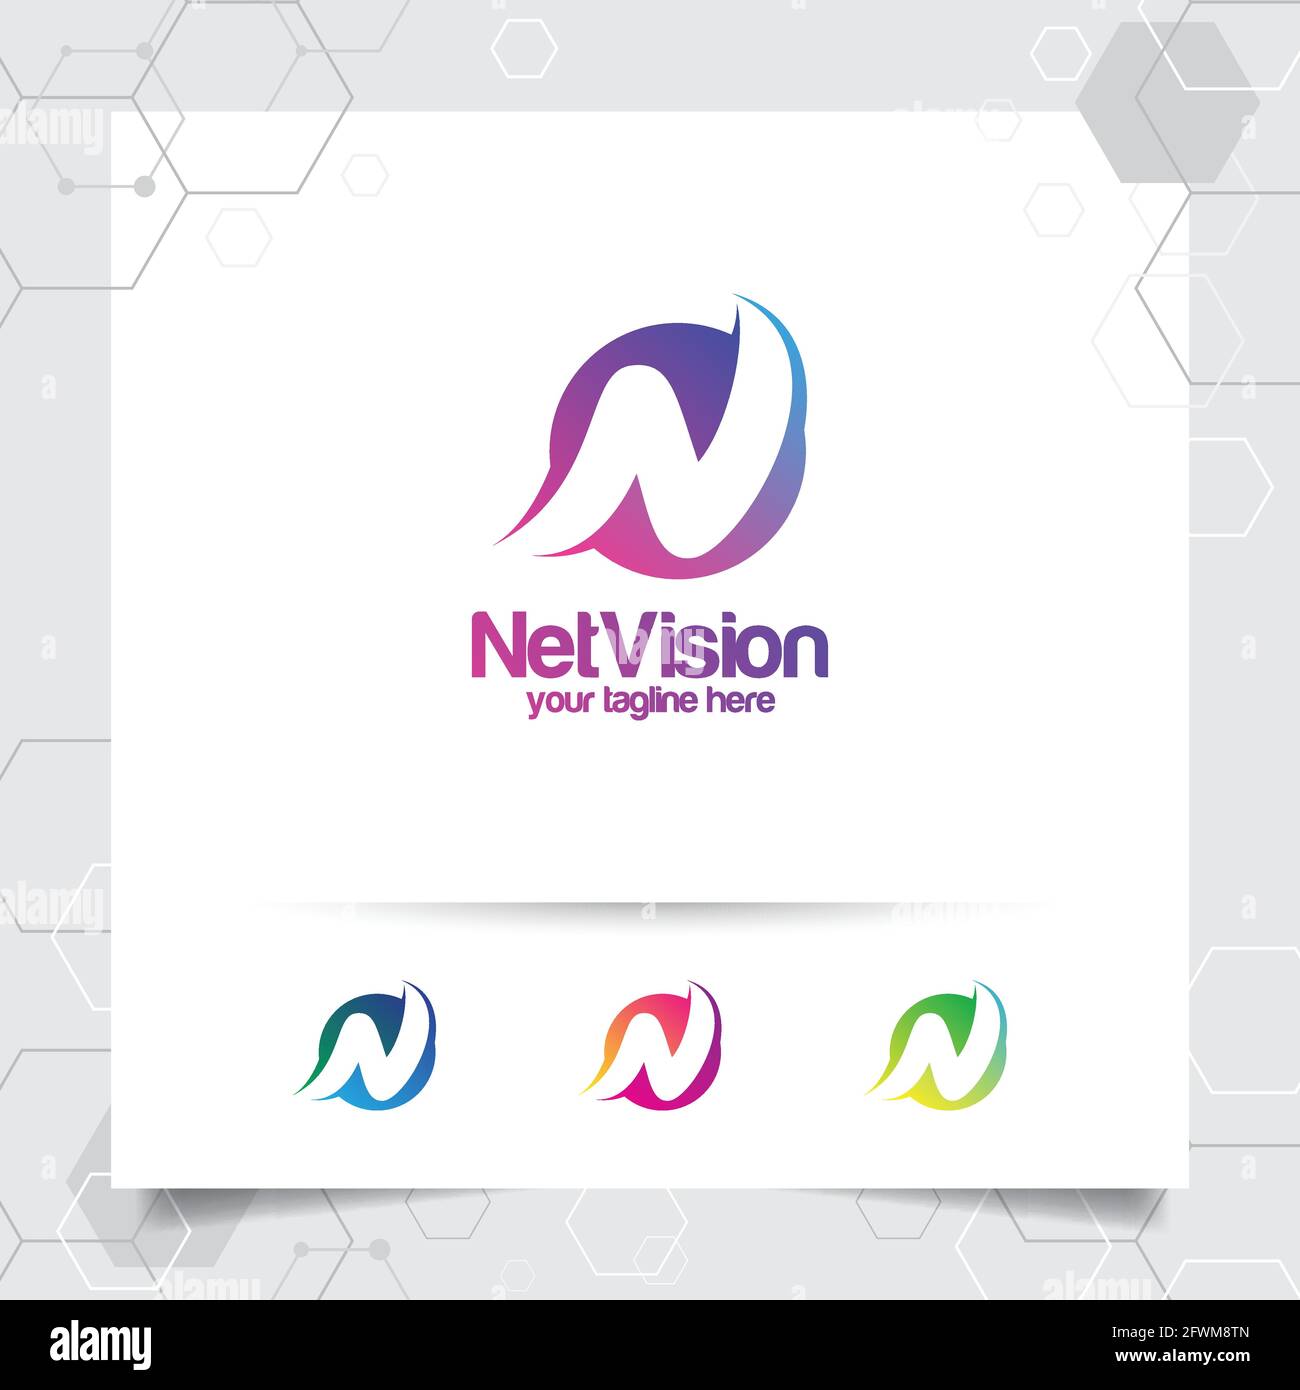 Digitaler Logo-Buchstabe N Design-Vektor mit modernen bunten Pixel für Technologie, Software, Studio, App und Business. Stock Vektor